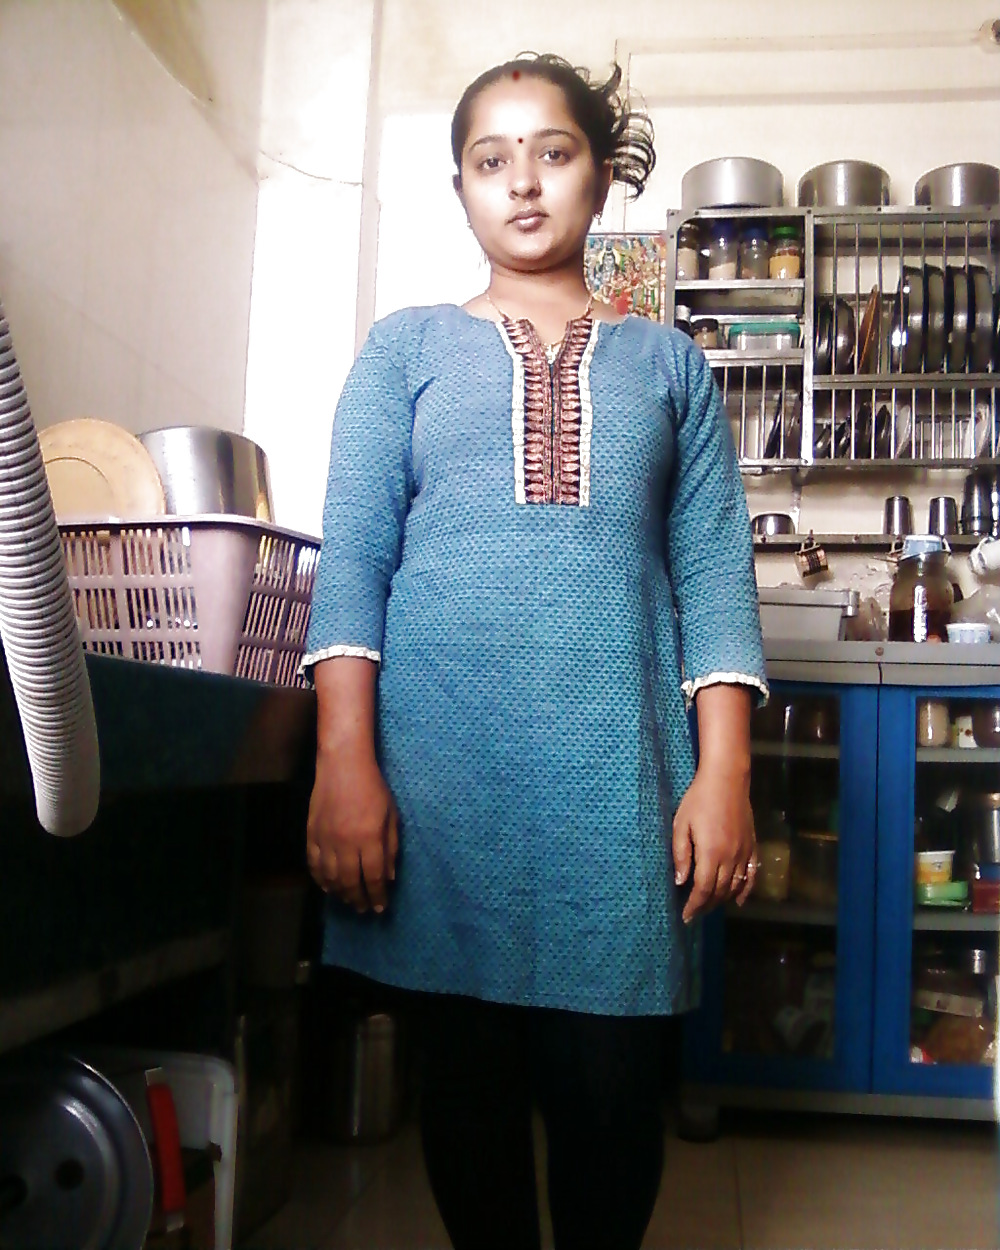 INDIAN HOT GIRLS-MANGLA BHABHI #25109525